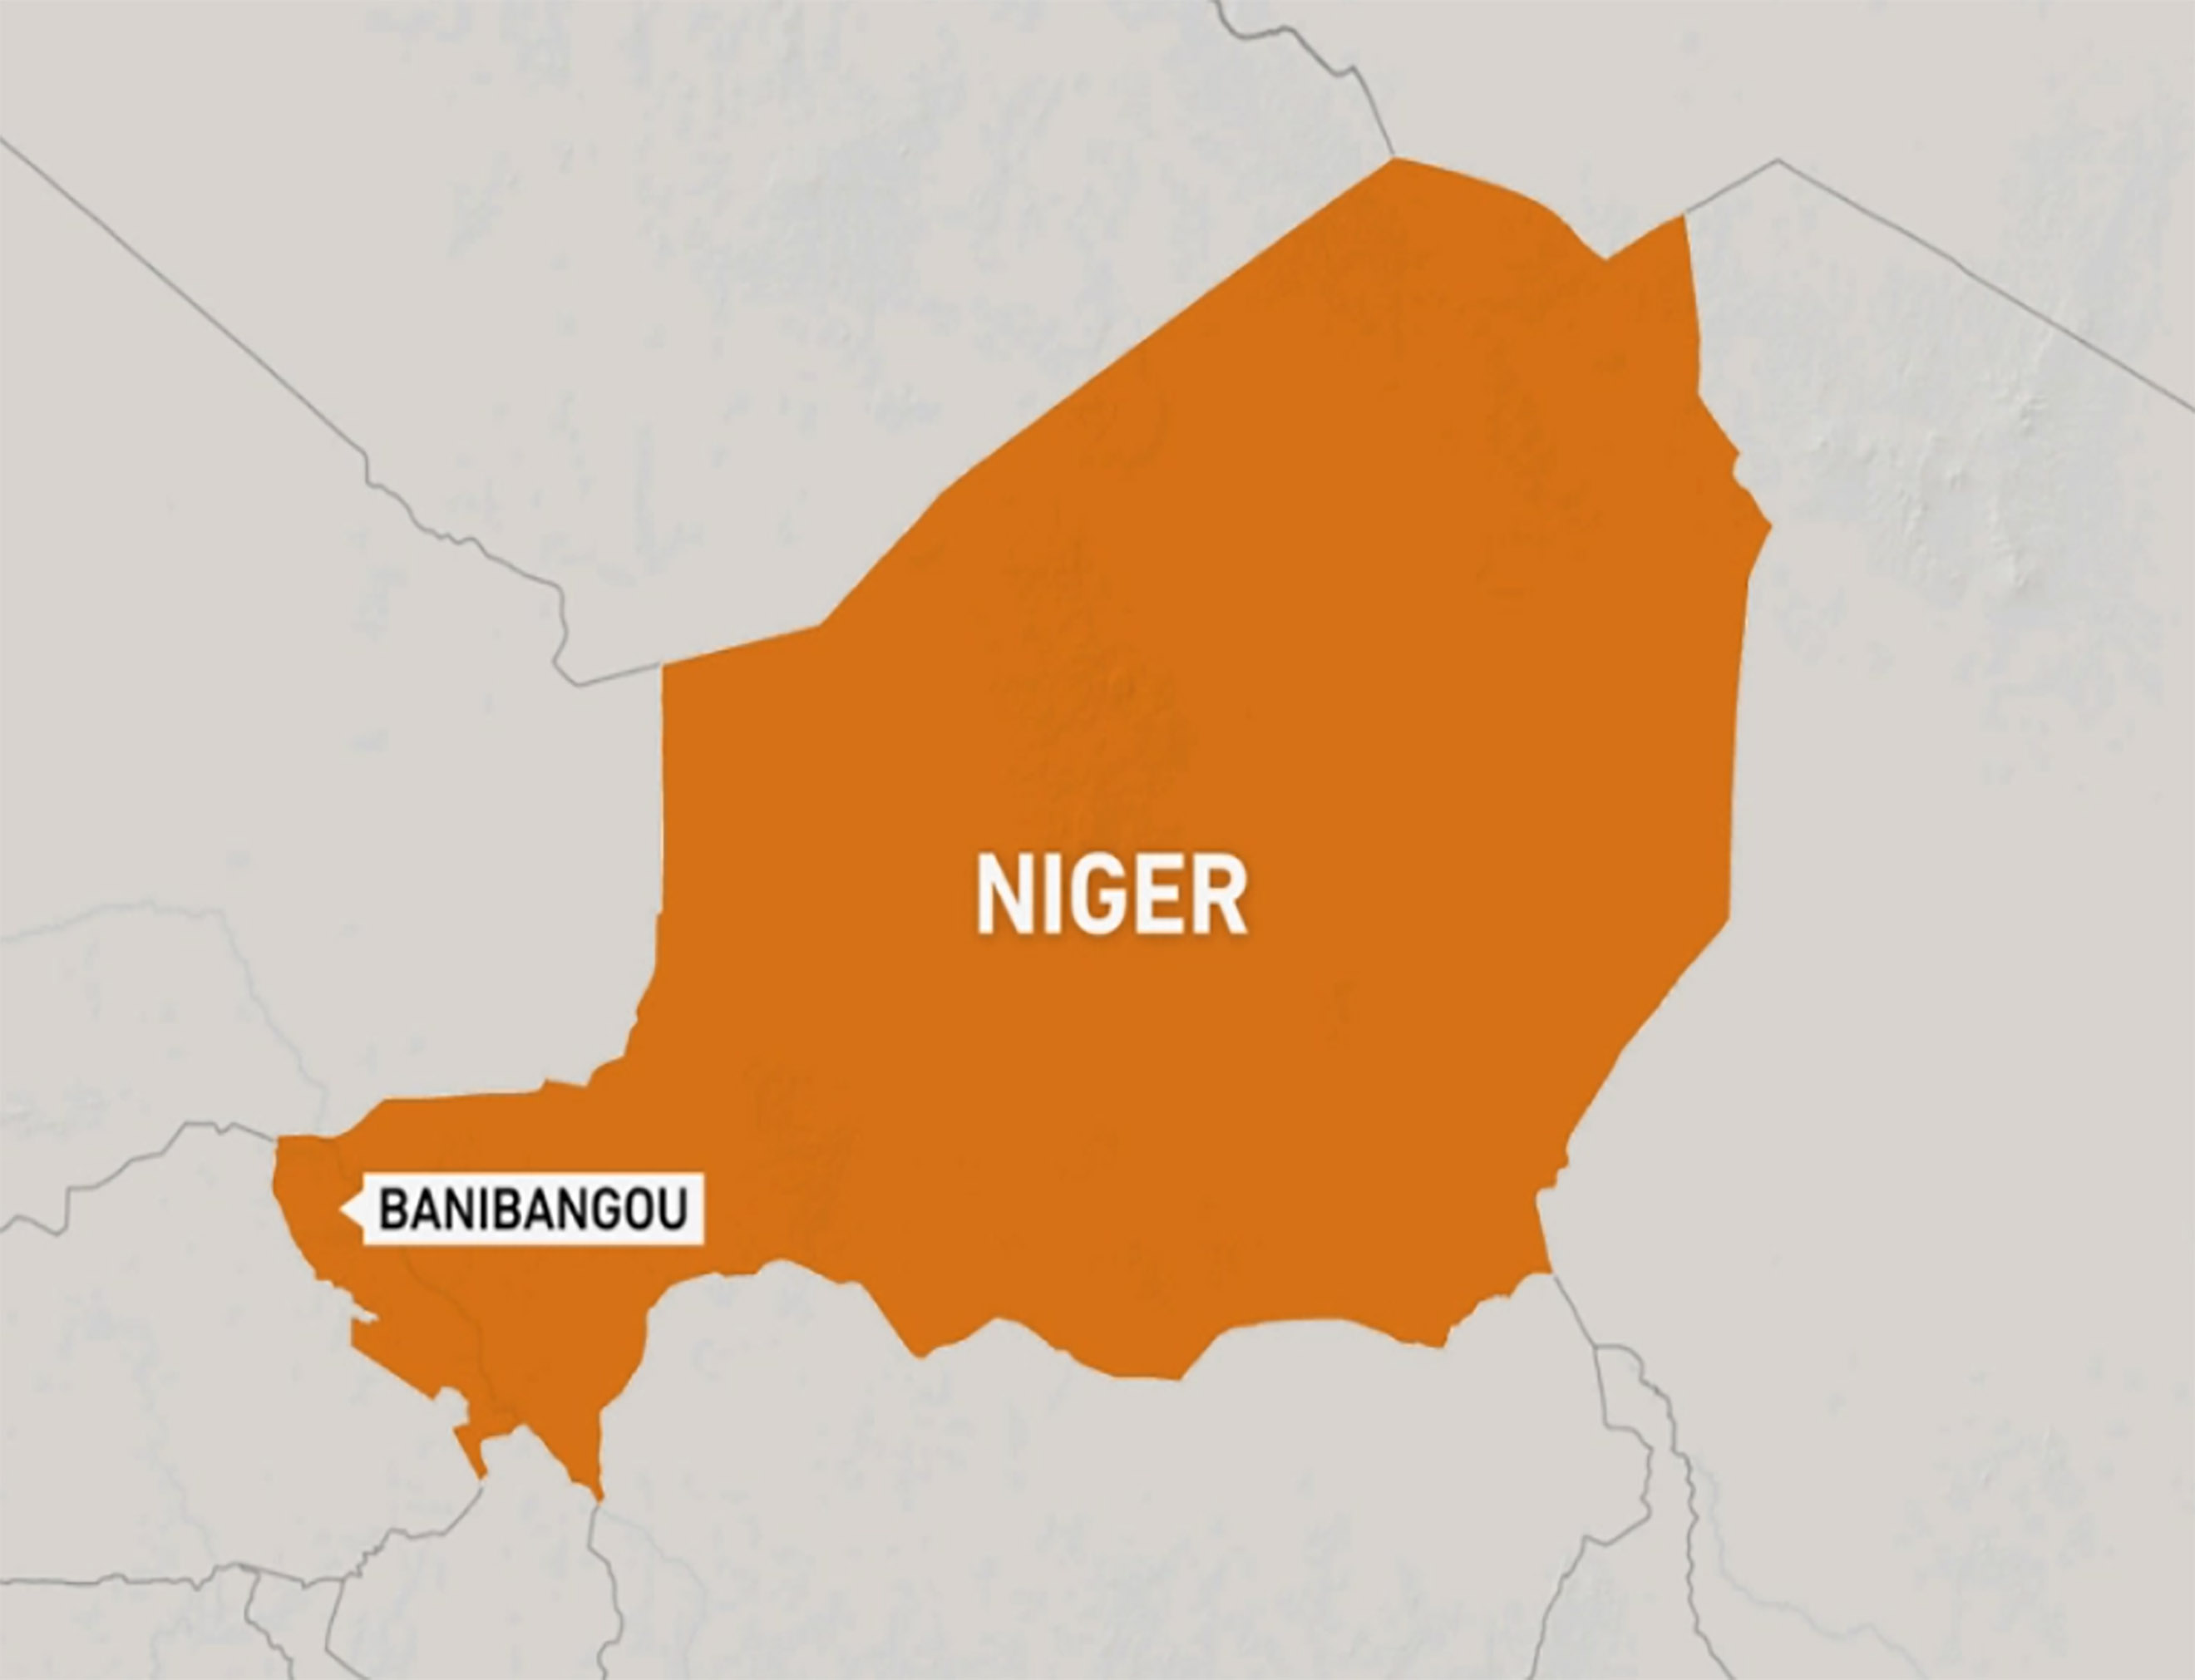 Le Secrétaire Général Déclare sa Solidarité avec le Niger